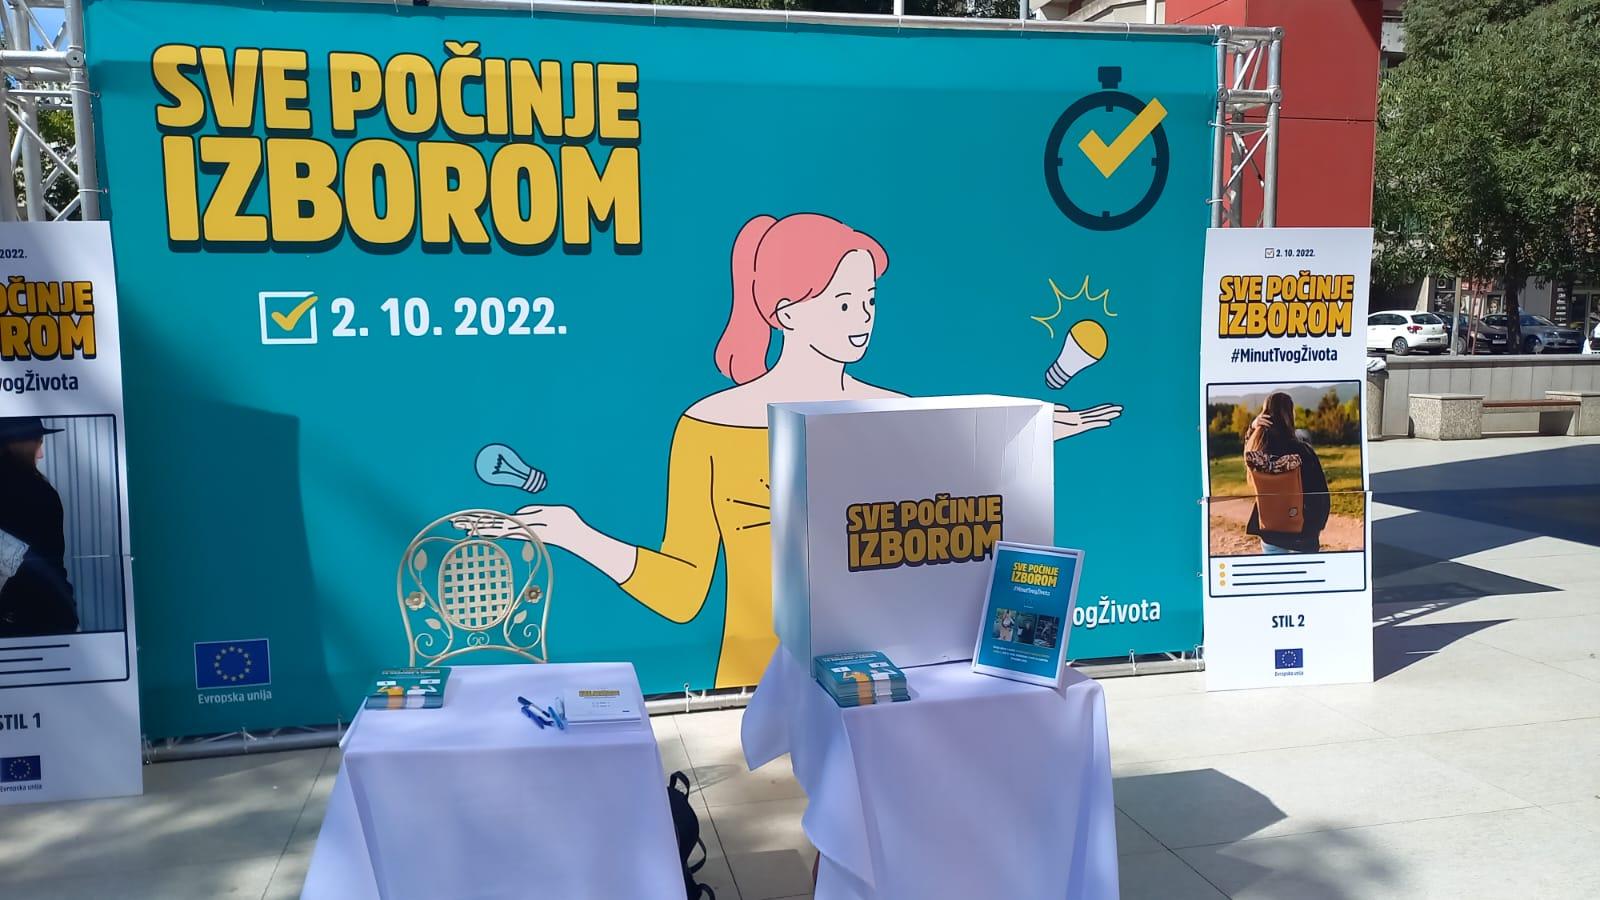 Delegacija EU u BiH pokrenula kampanju "Sve počinje izborom" - Avaz